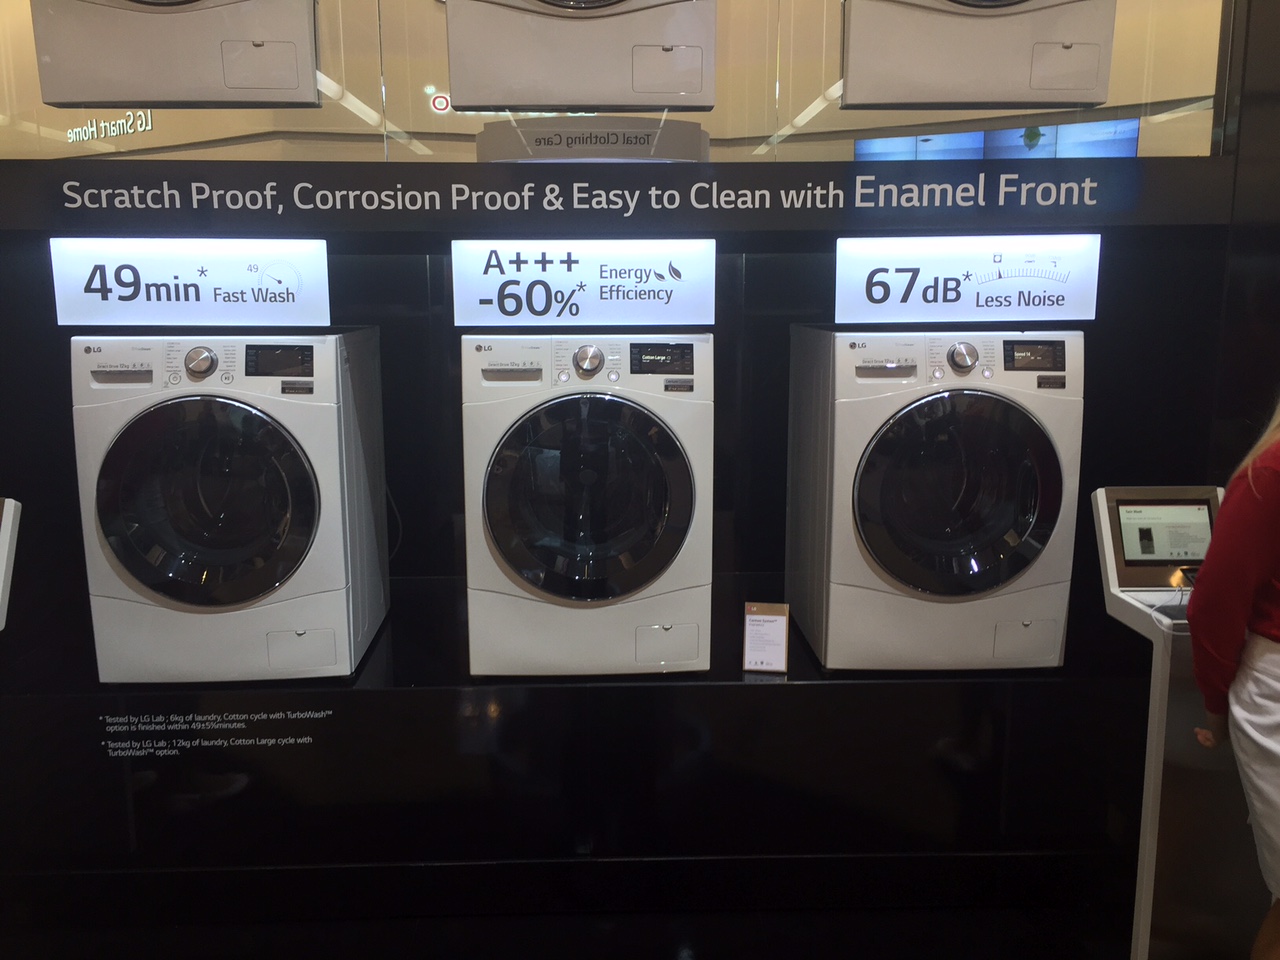 Τα νέα πλυντήρια της LG που παρουσιάζονται στην ΙFA 2015 με το νέο Centum System που απορροφά τελείως τους κραδασμούς!